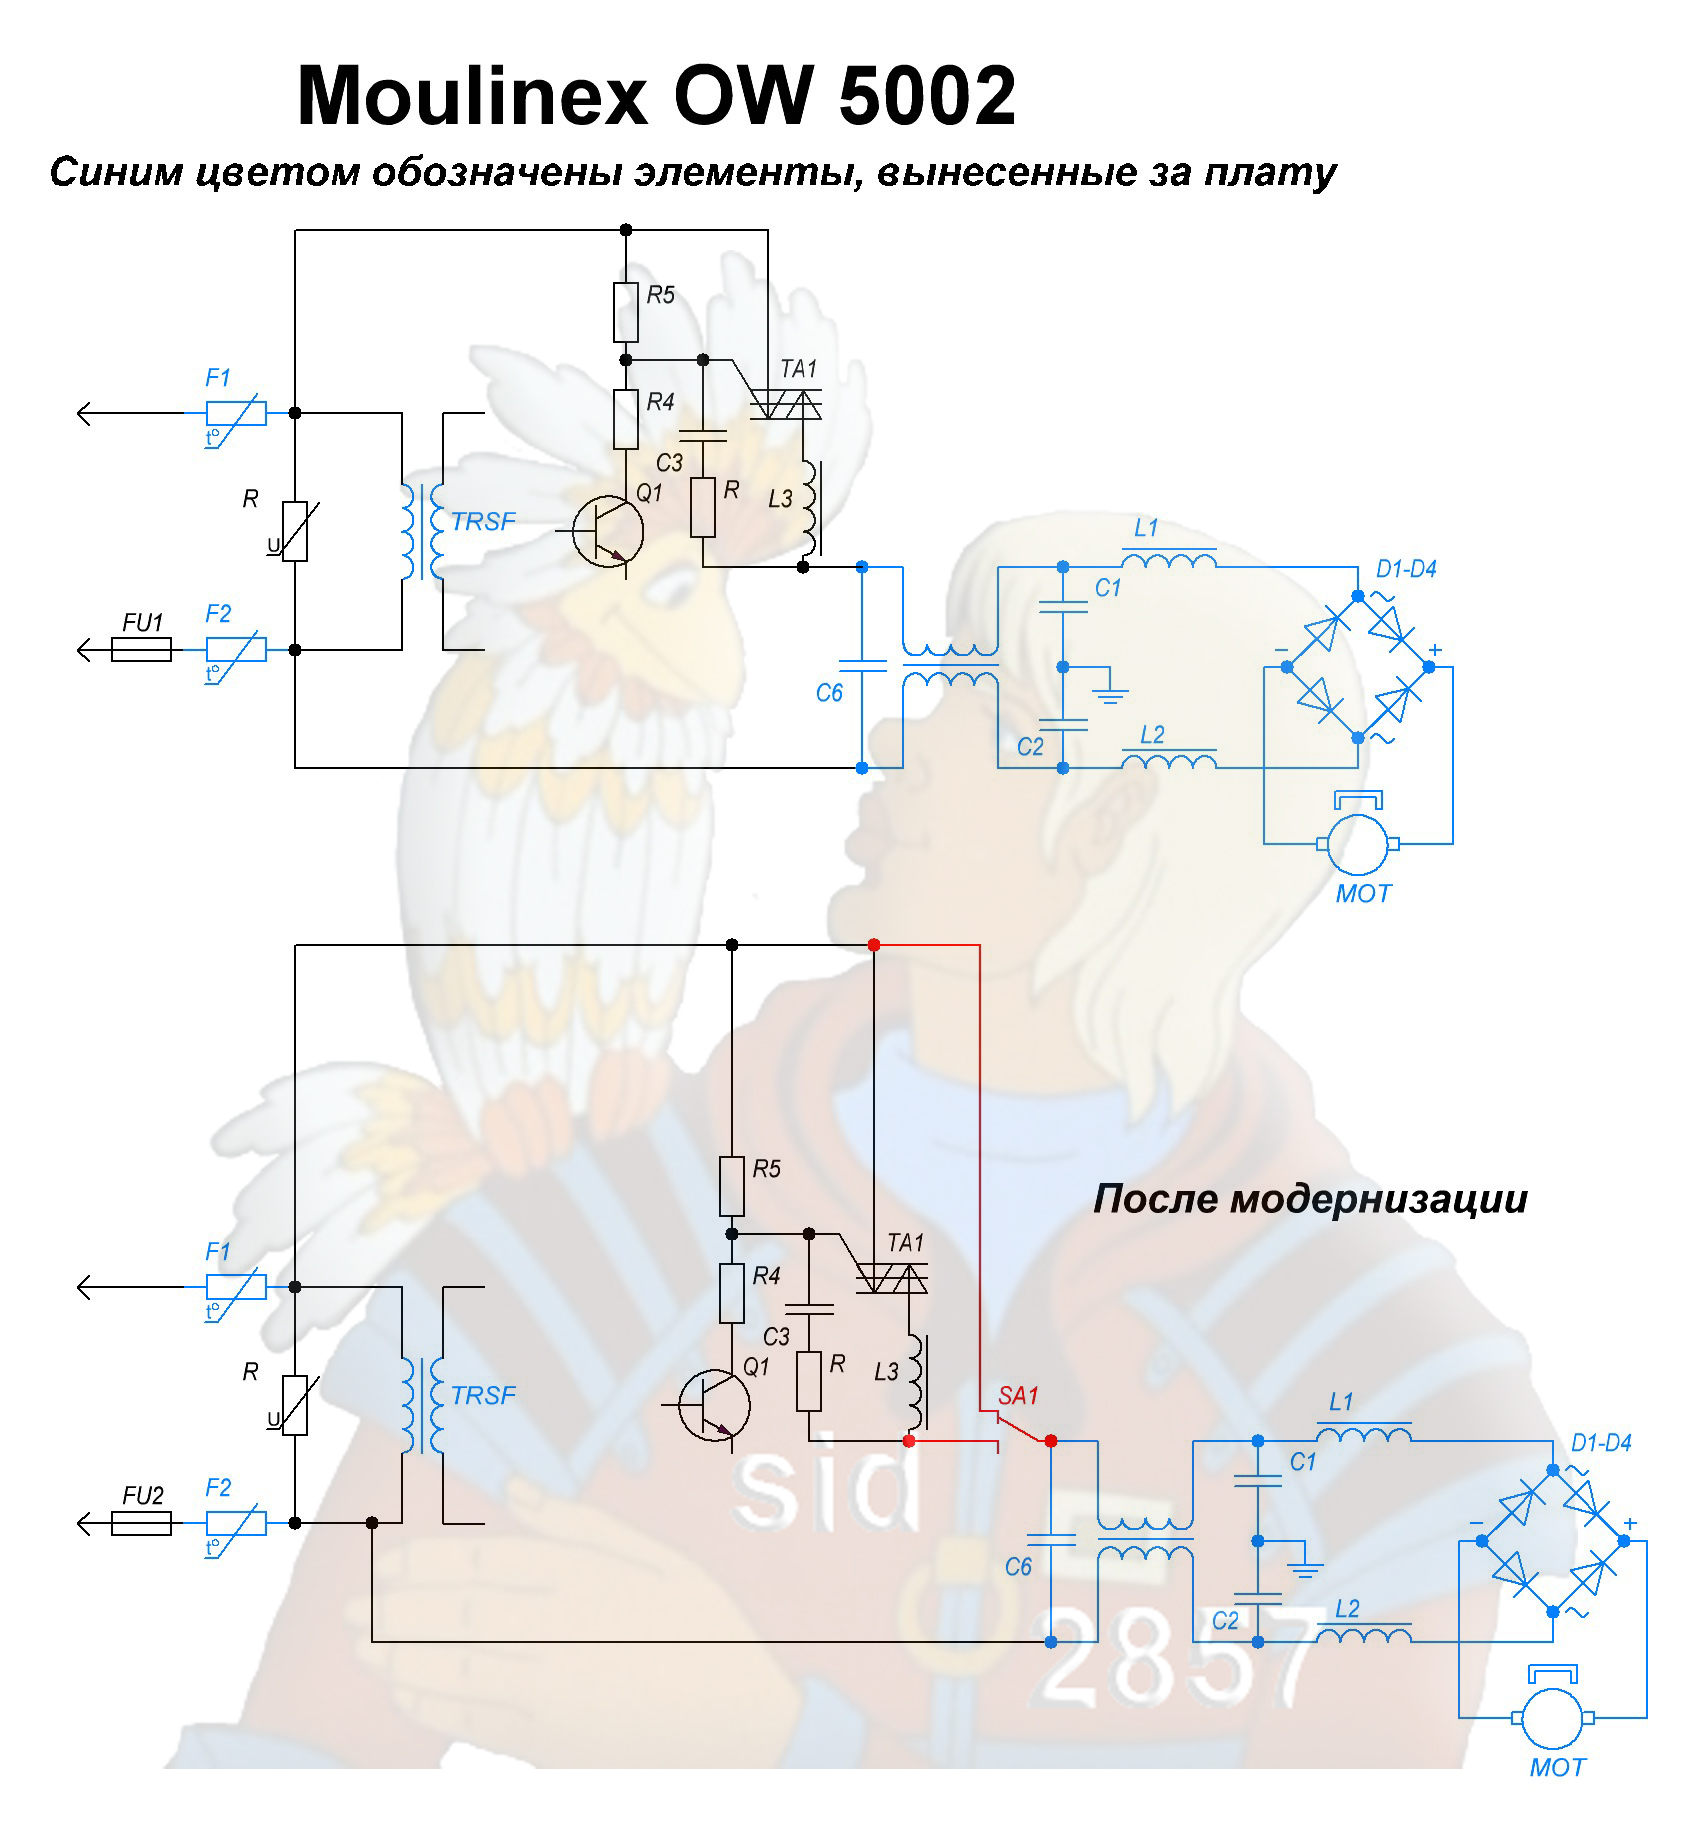 إصلاح توقف المحرك HP Moulinex 5002